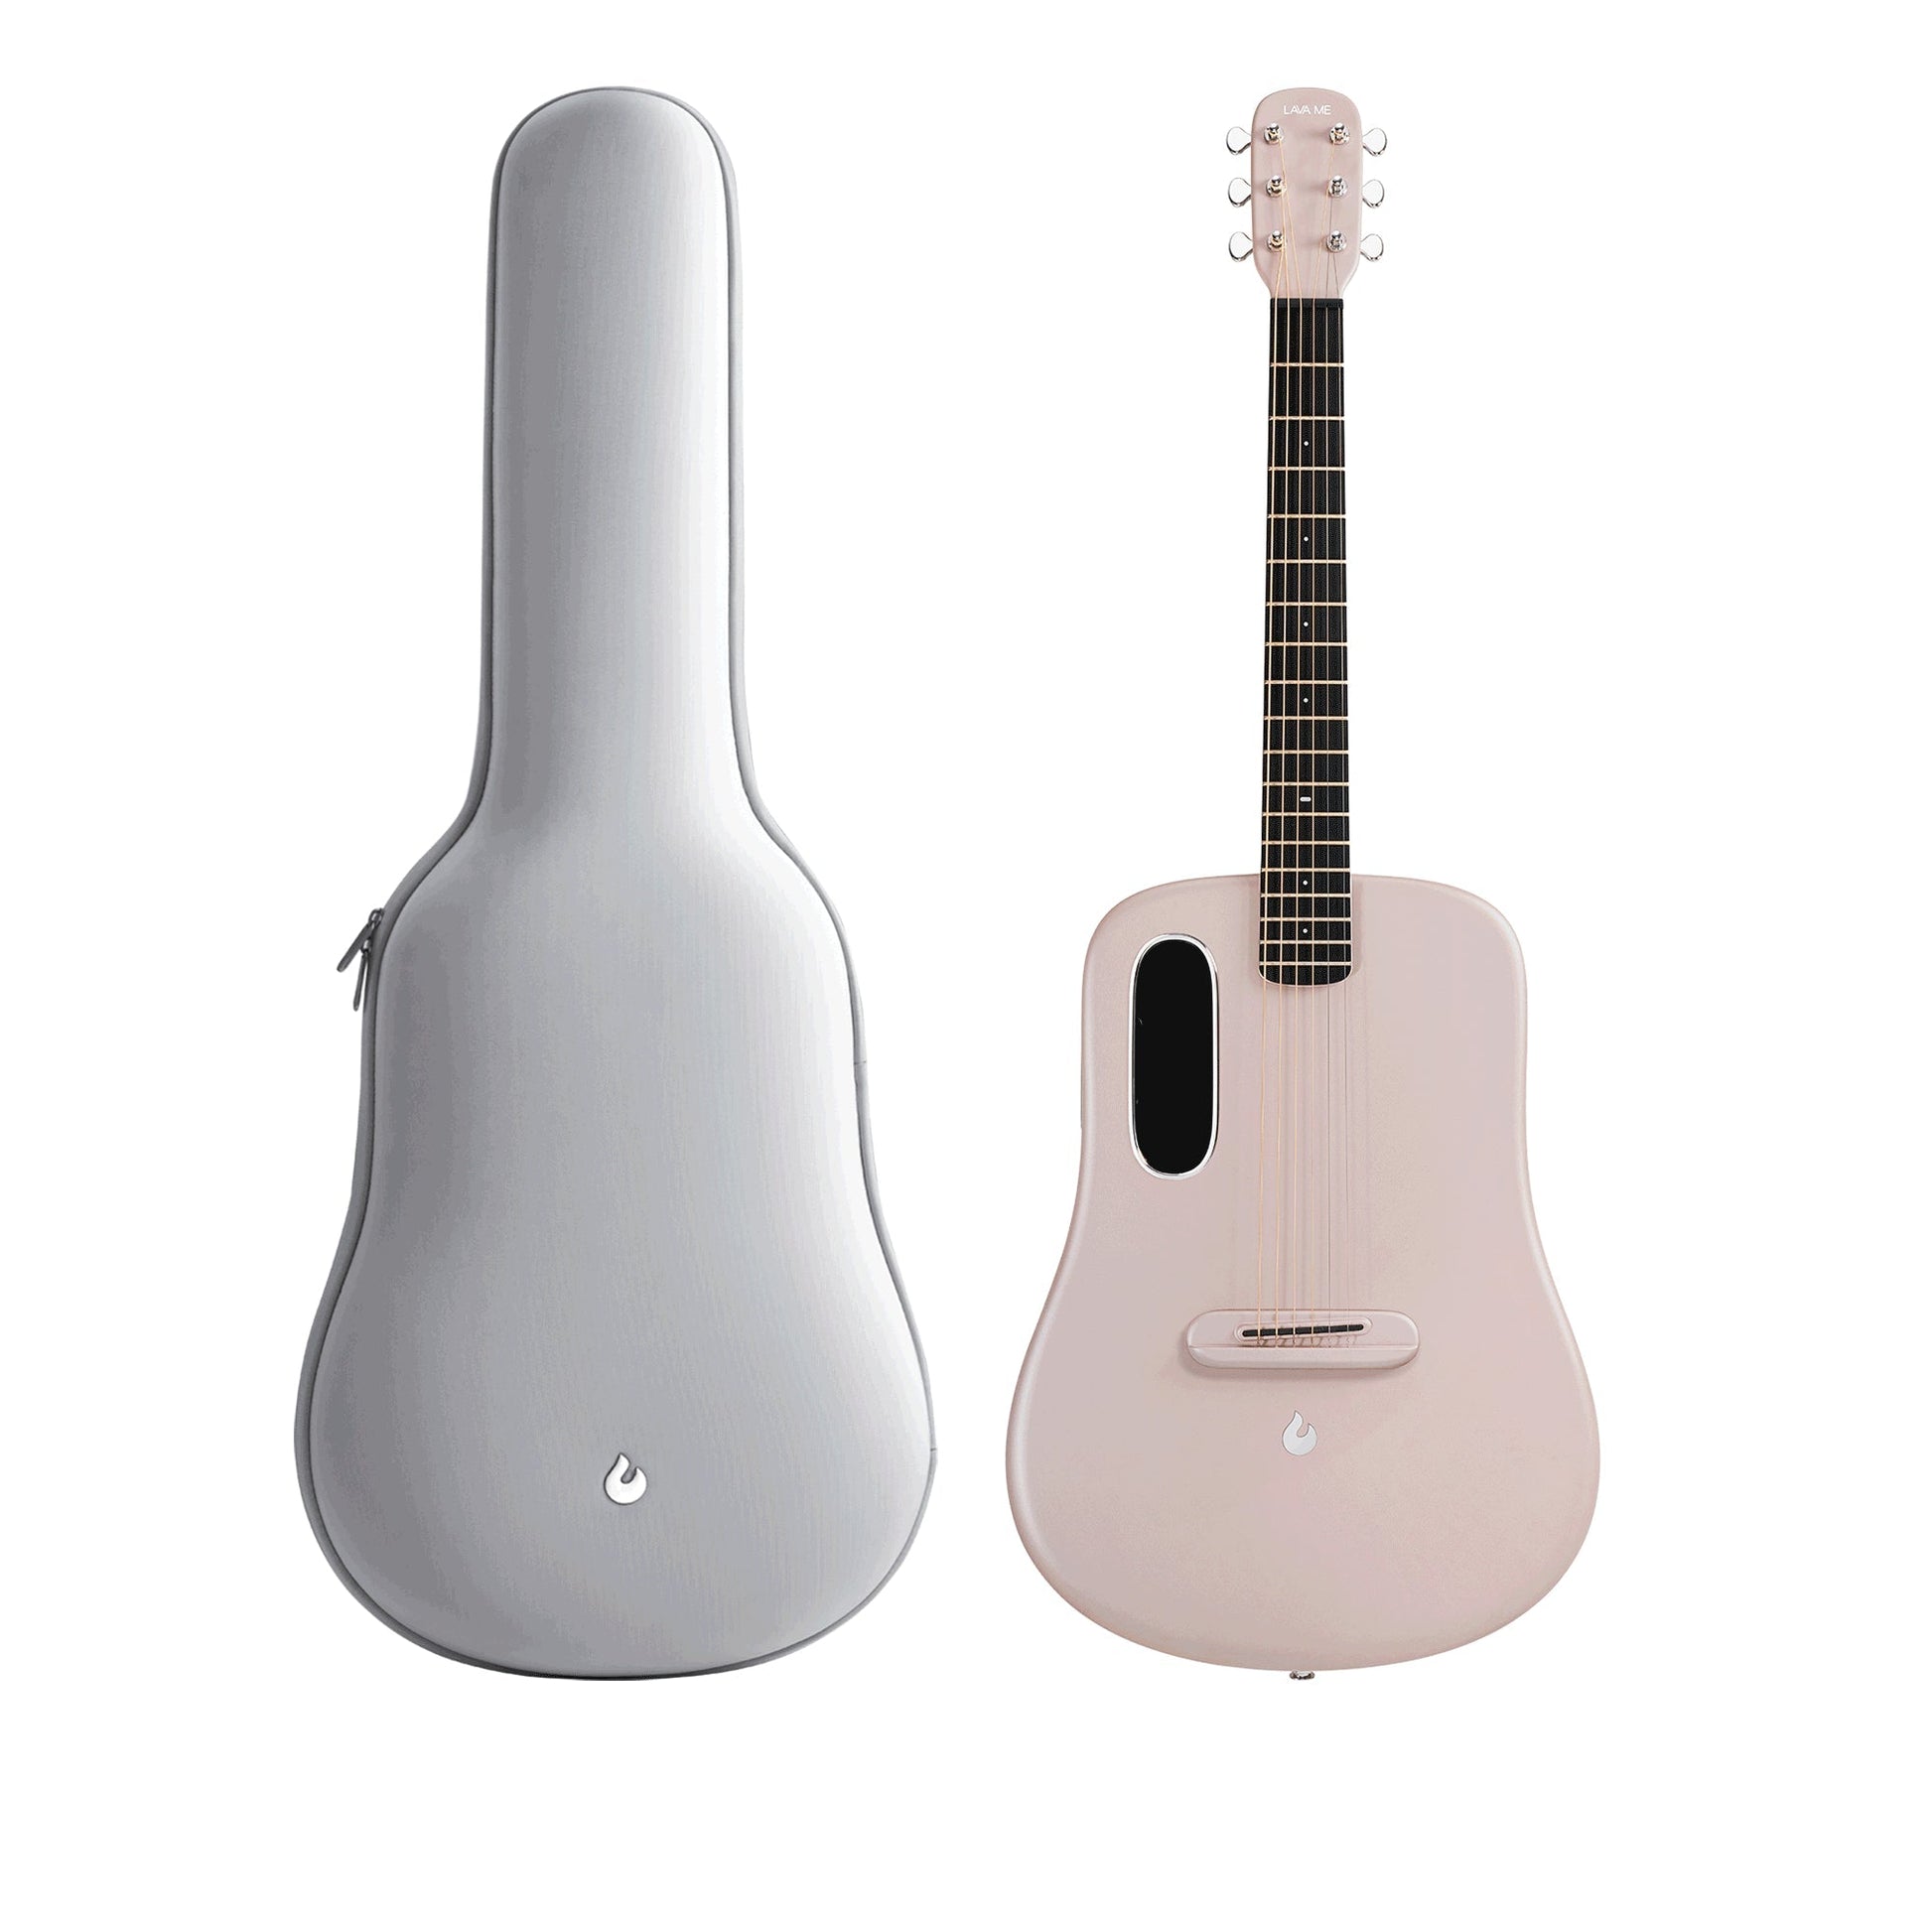 Đàn Guitar Acoustic Lava Me 4 Carbon Fiber - Size 36, Pink - Việt Music